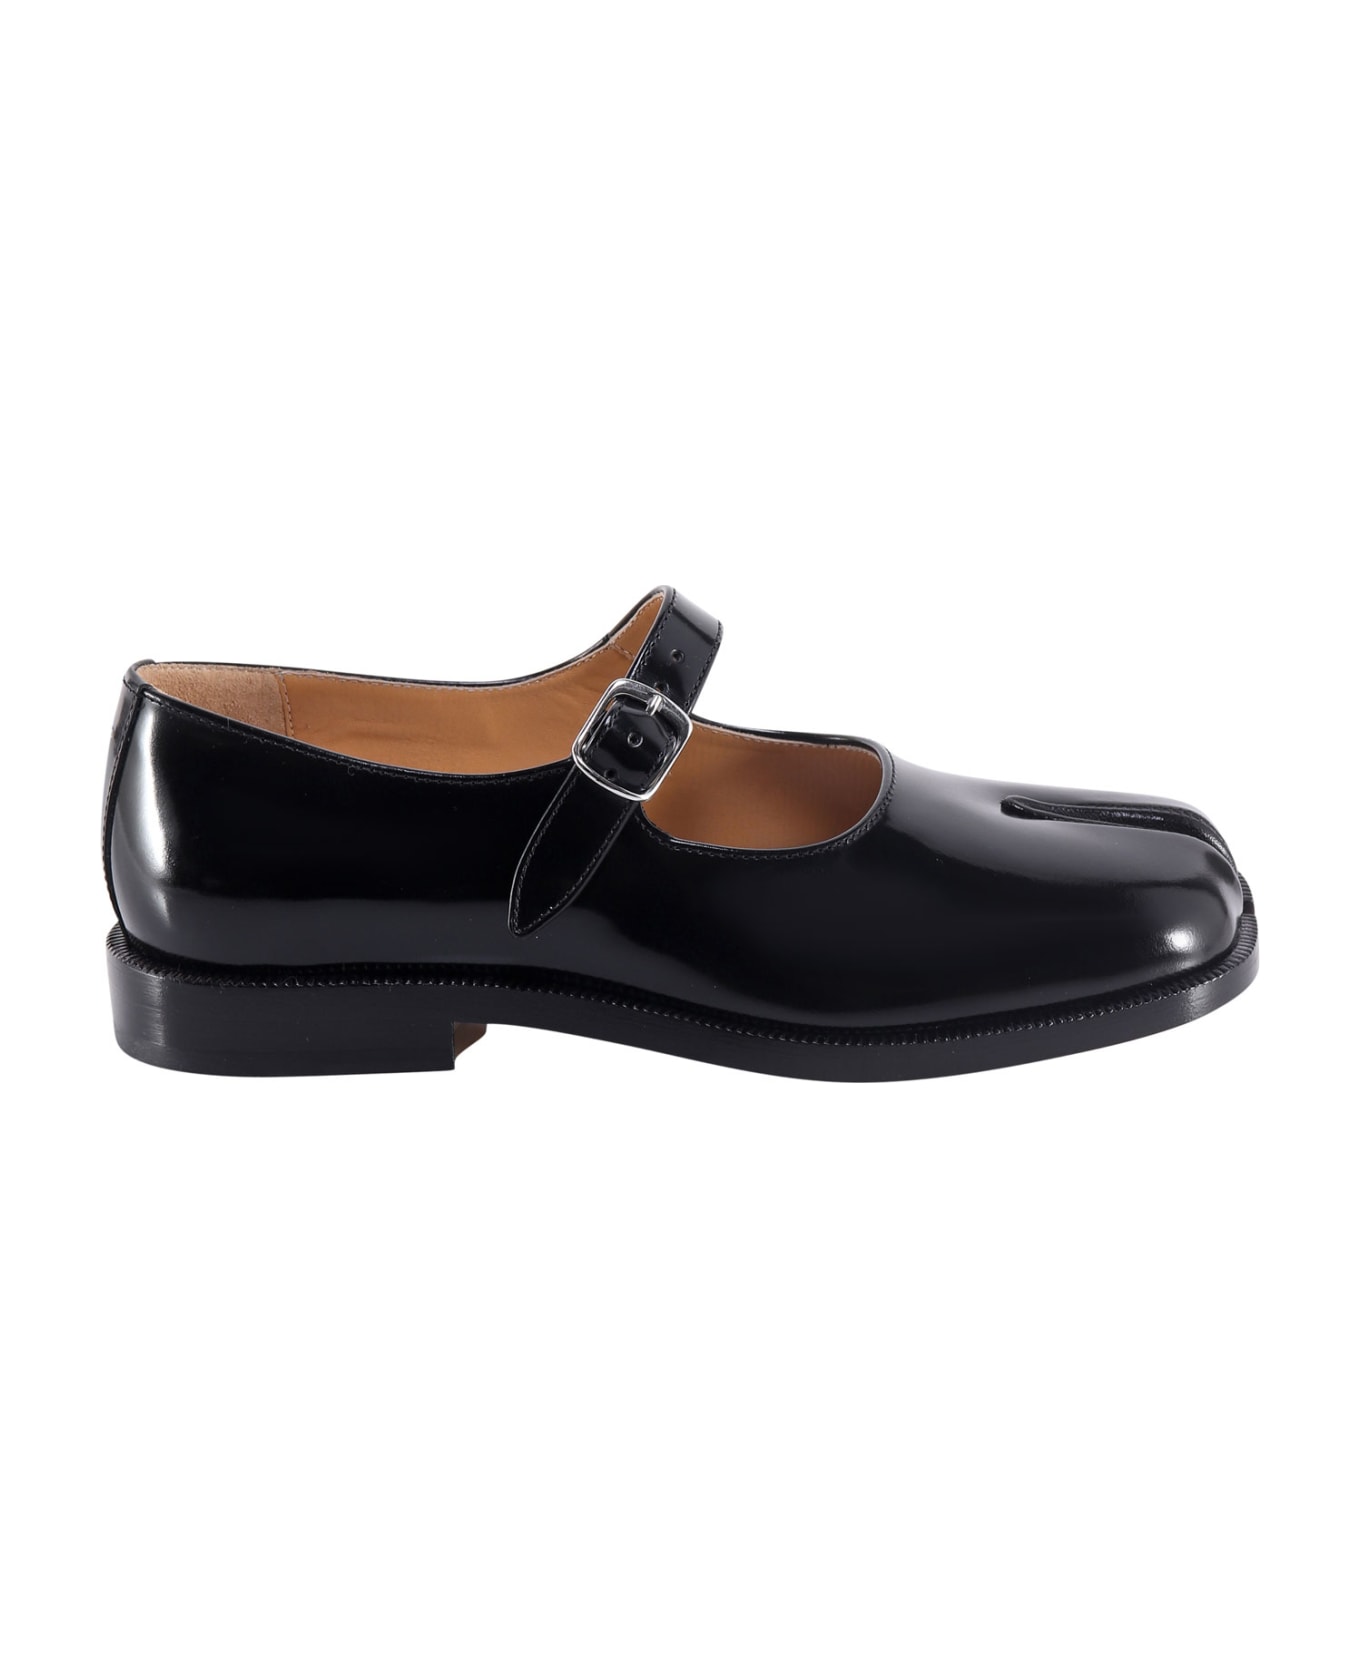 Maison Margiela Tabi Leather Mary Jane Shoes - Black フラットシューズ